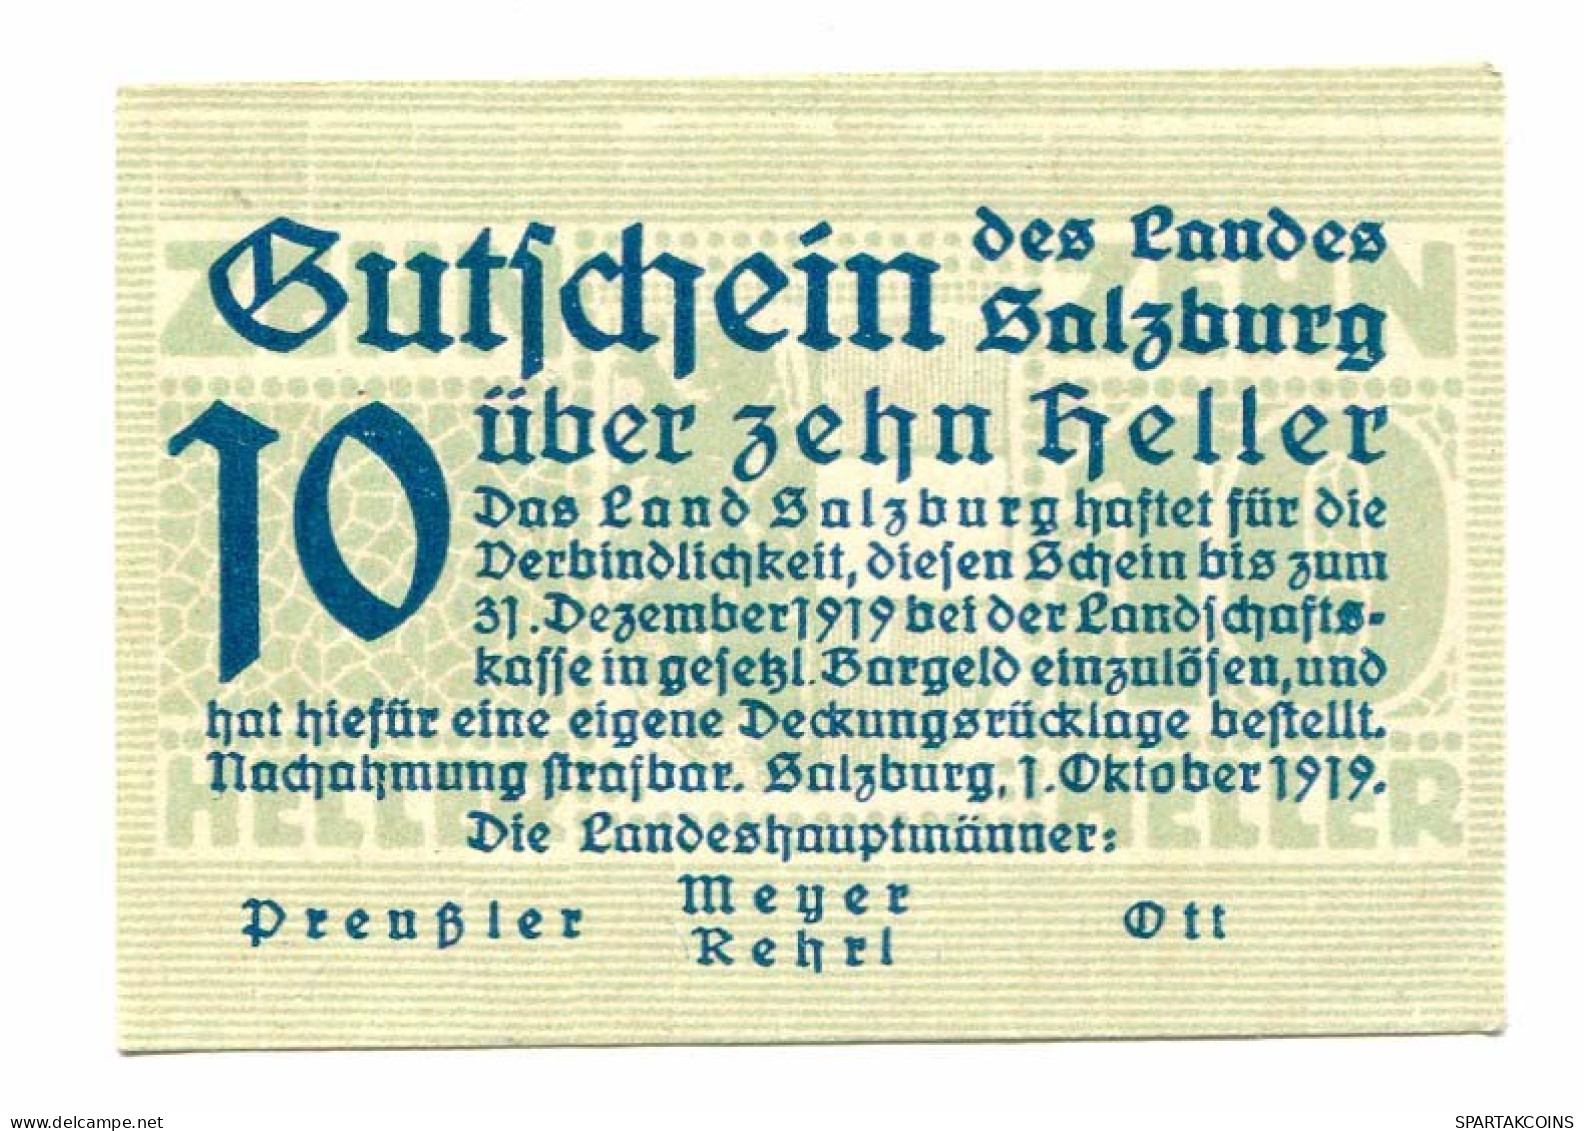 10 Heller 1919 SALZBURG Österreich UNC Notgeld Papiergeld Banknote #P10696 - [11] Local Banknote Issues